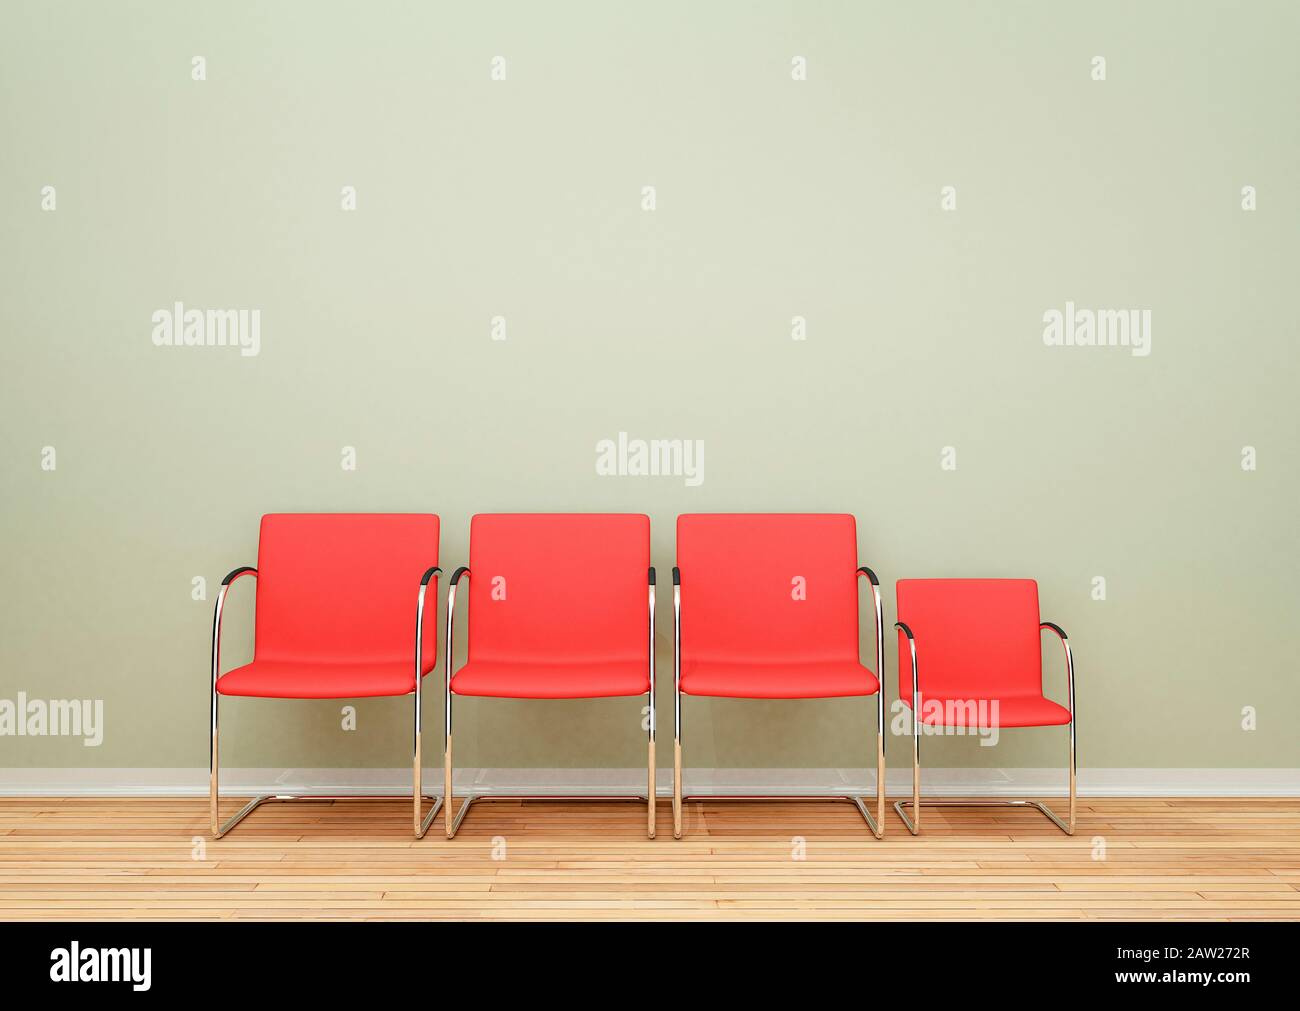 Drei größere Stühle und ein kleinerer Stuhl hintereinander in einem leeren Raum - Differenzkonzept Stockfoto